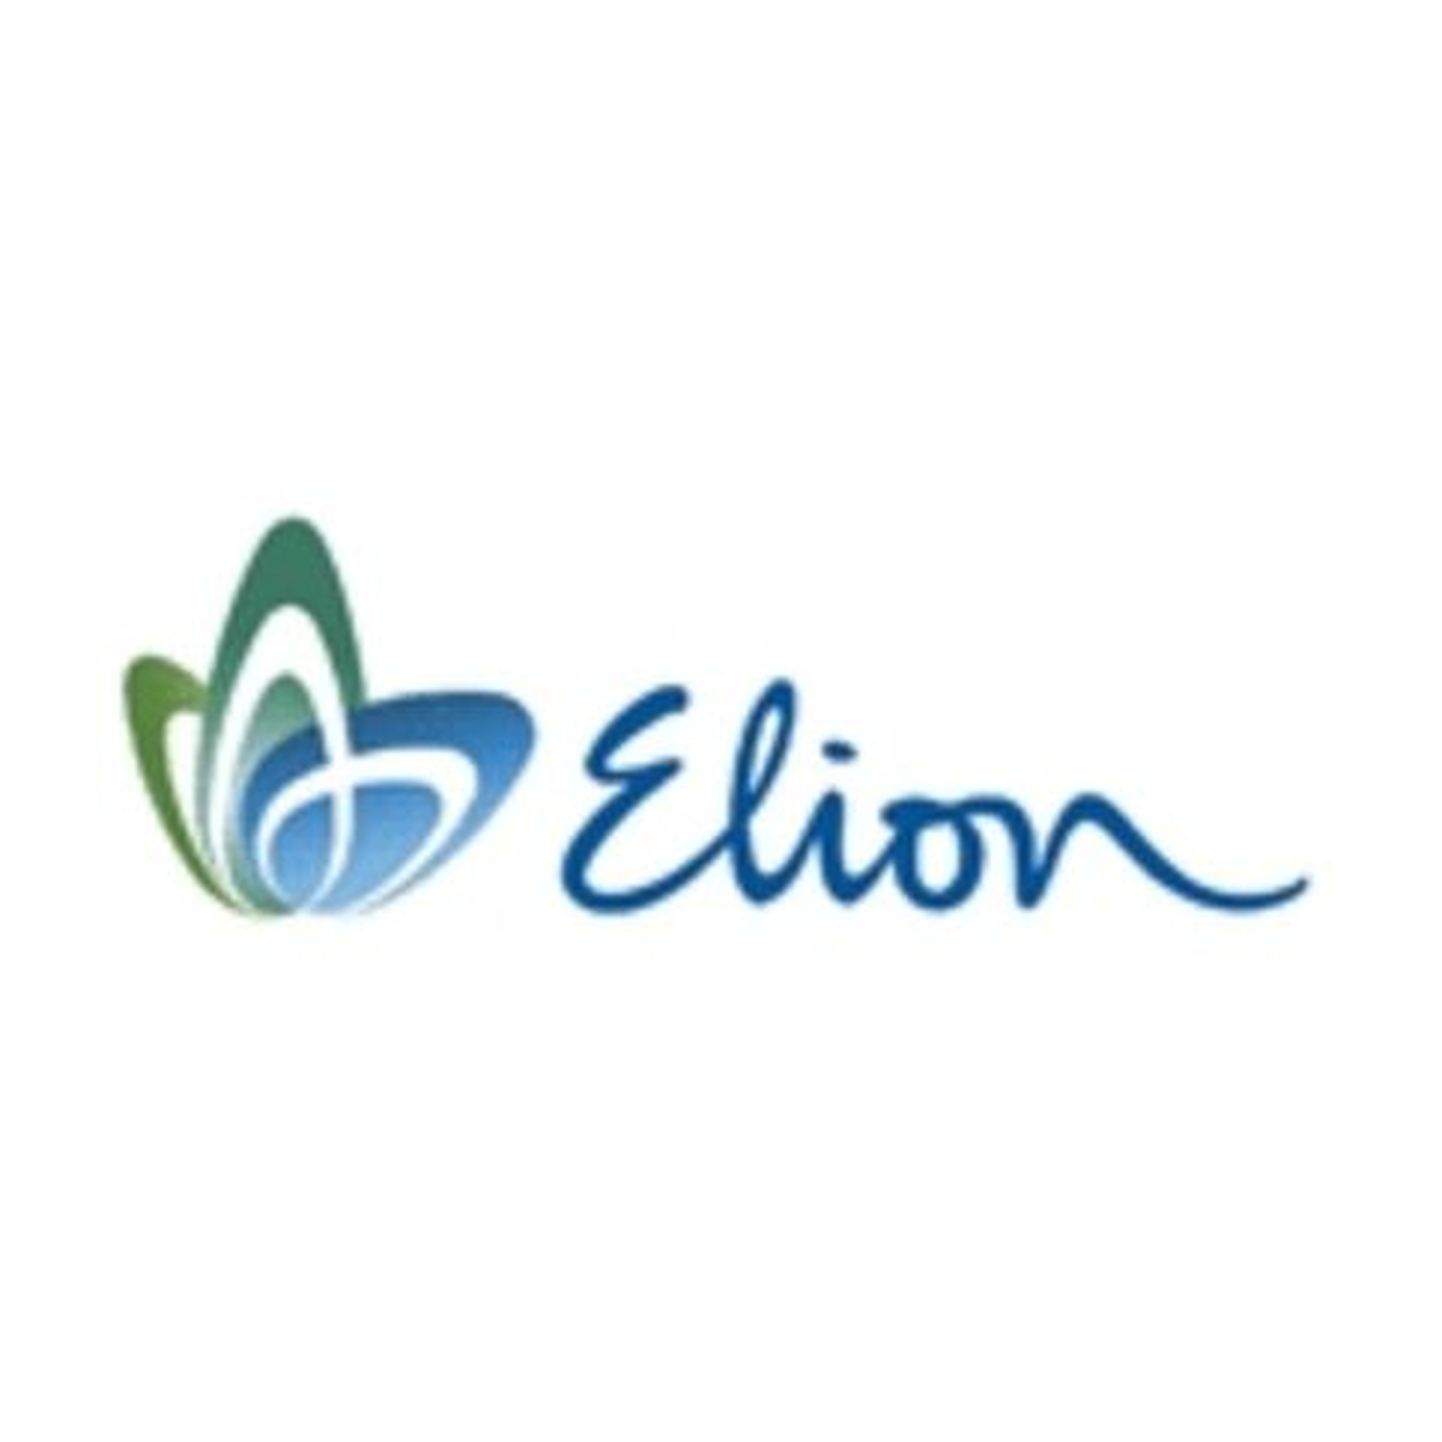 Логотип Elion.